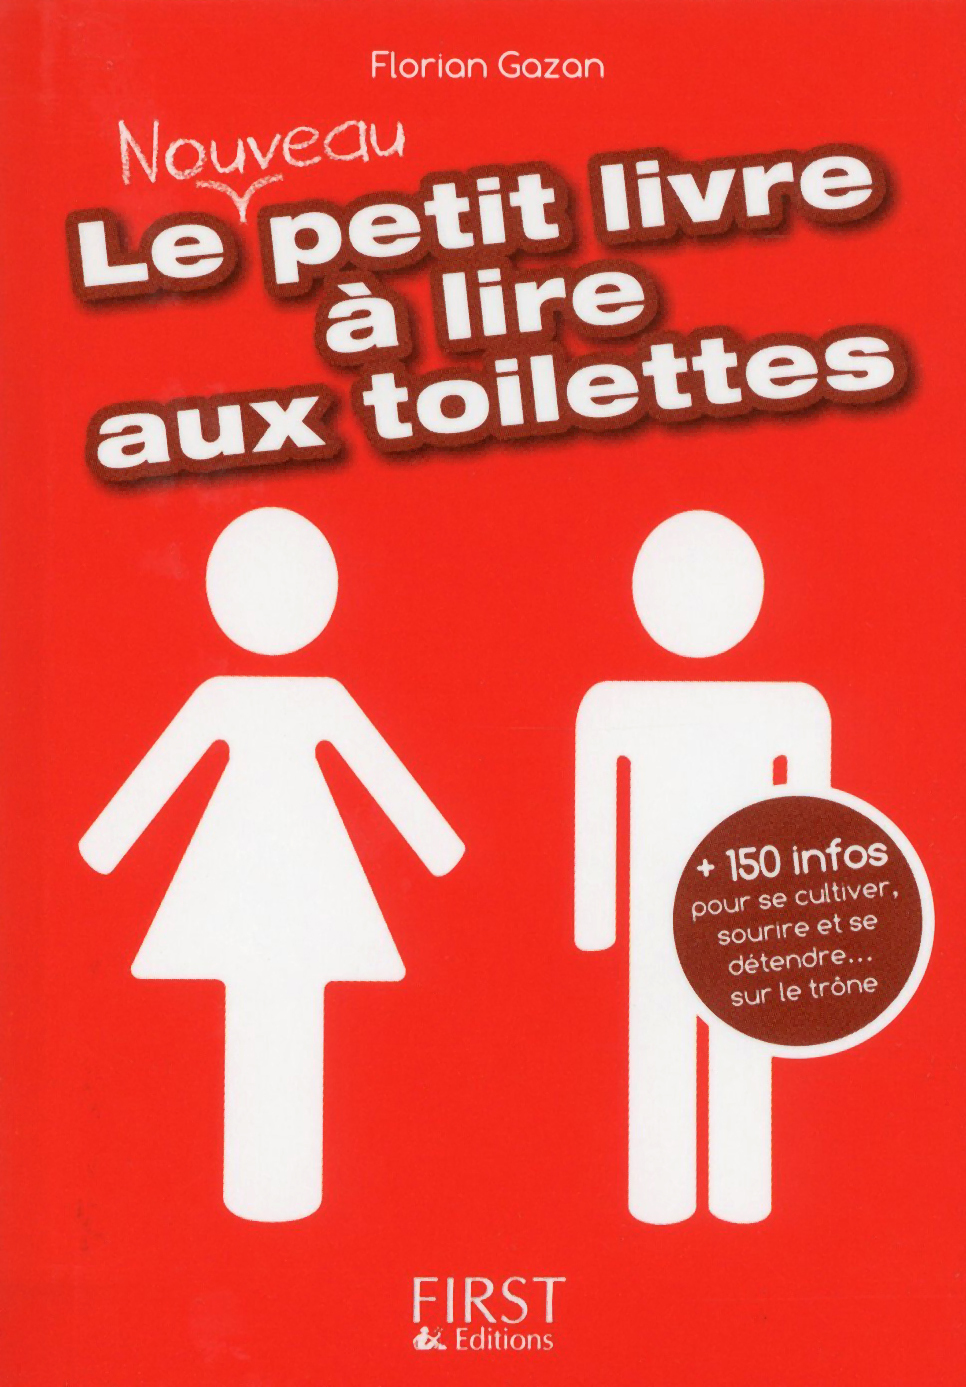 Le petit livre à lire aux toilettes